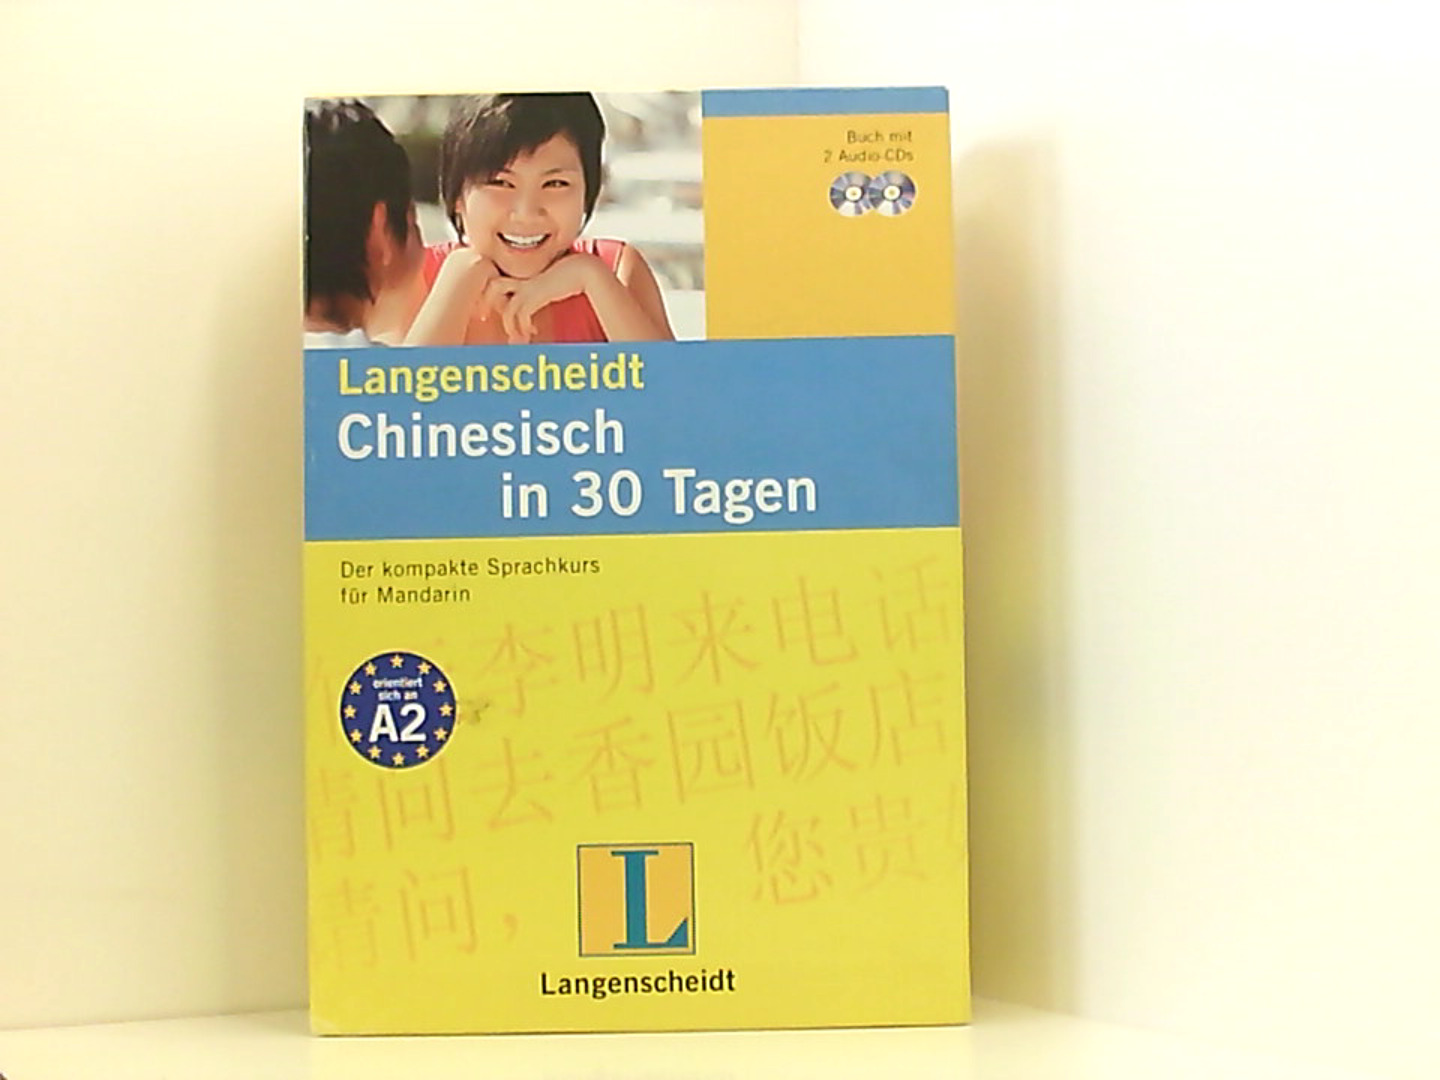 Langenscheidt Chinesisch in 30 Tagen - Set mit Buch und 2 Audio-CDs: Der kompakte Sprachkurs für Mandarin (Langenscheidt Selbstlernkurse ... in 30 Tagen) - Wu Swihart, De-an